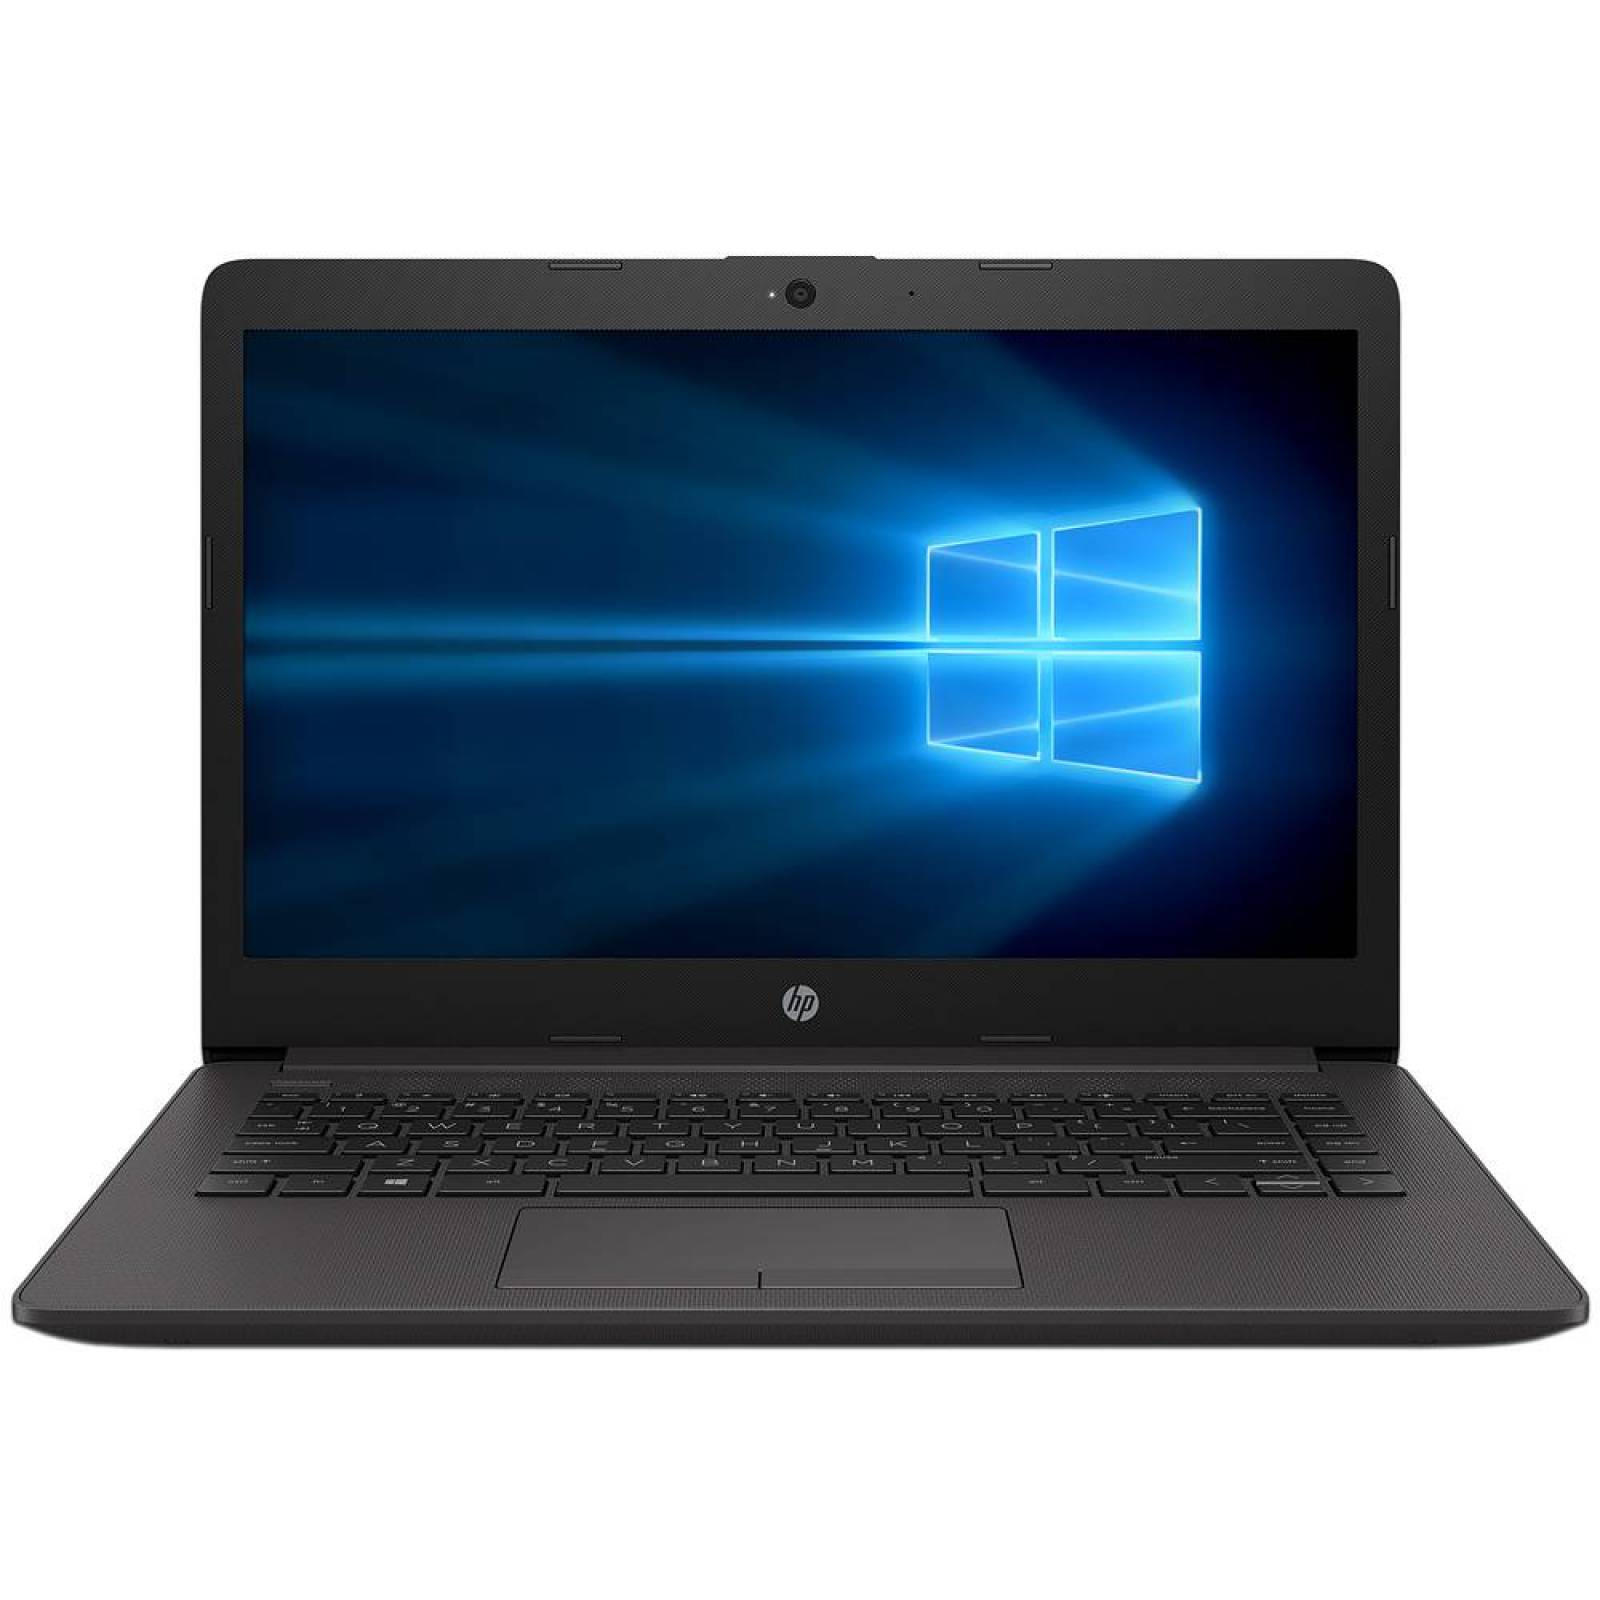 Laptop HP 240 G7 Procesador Intel Core i3 7020U Memoria de 4GB DDR4 Disco Duro de 500GB Pantalla de 14 LED Video HD Graphics 620 Unidad Ã“ptica No Incluida SO Windows 10 Pro